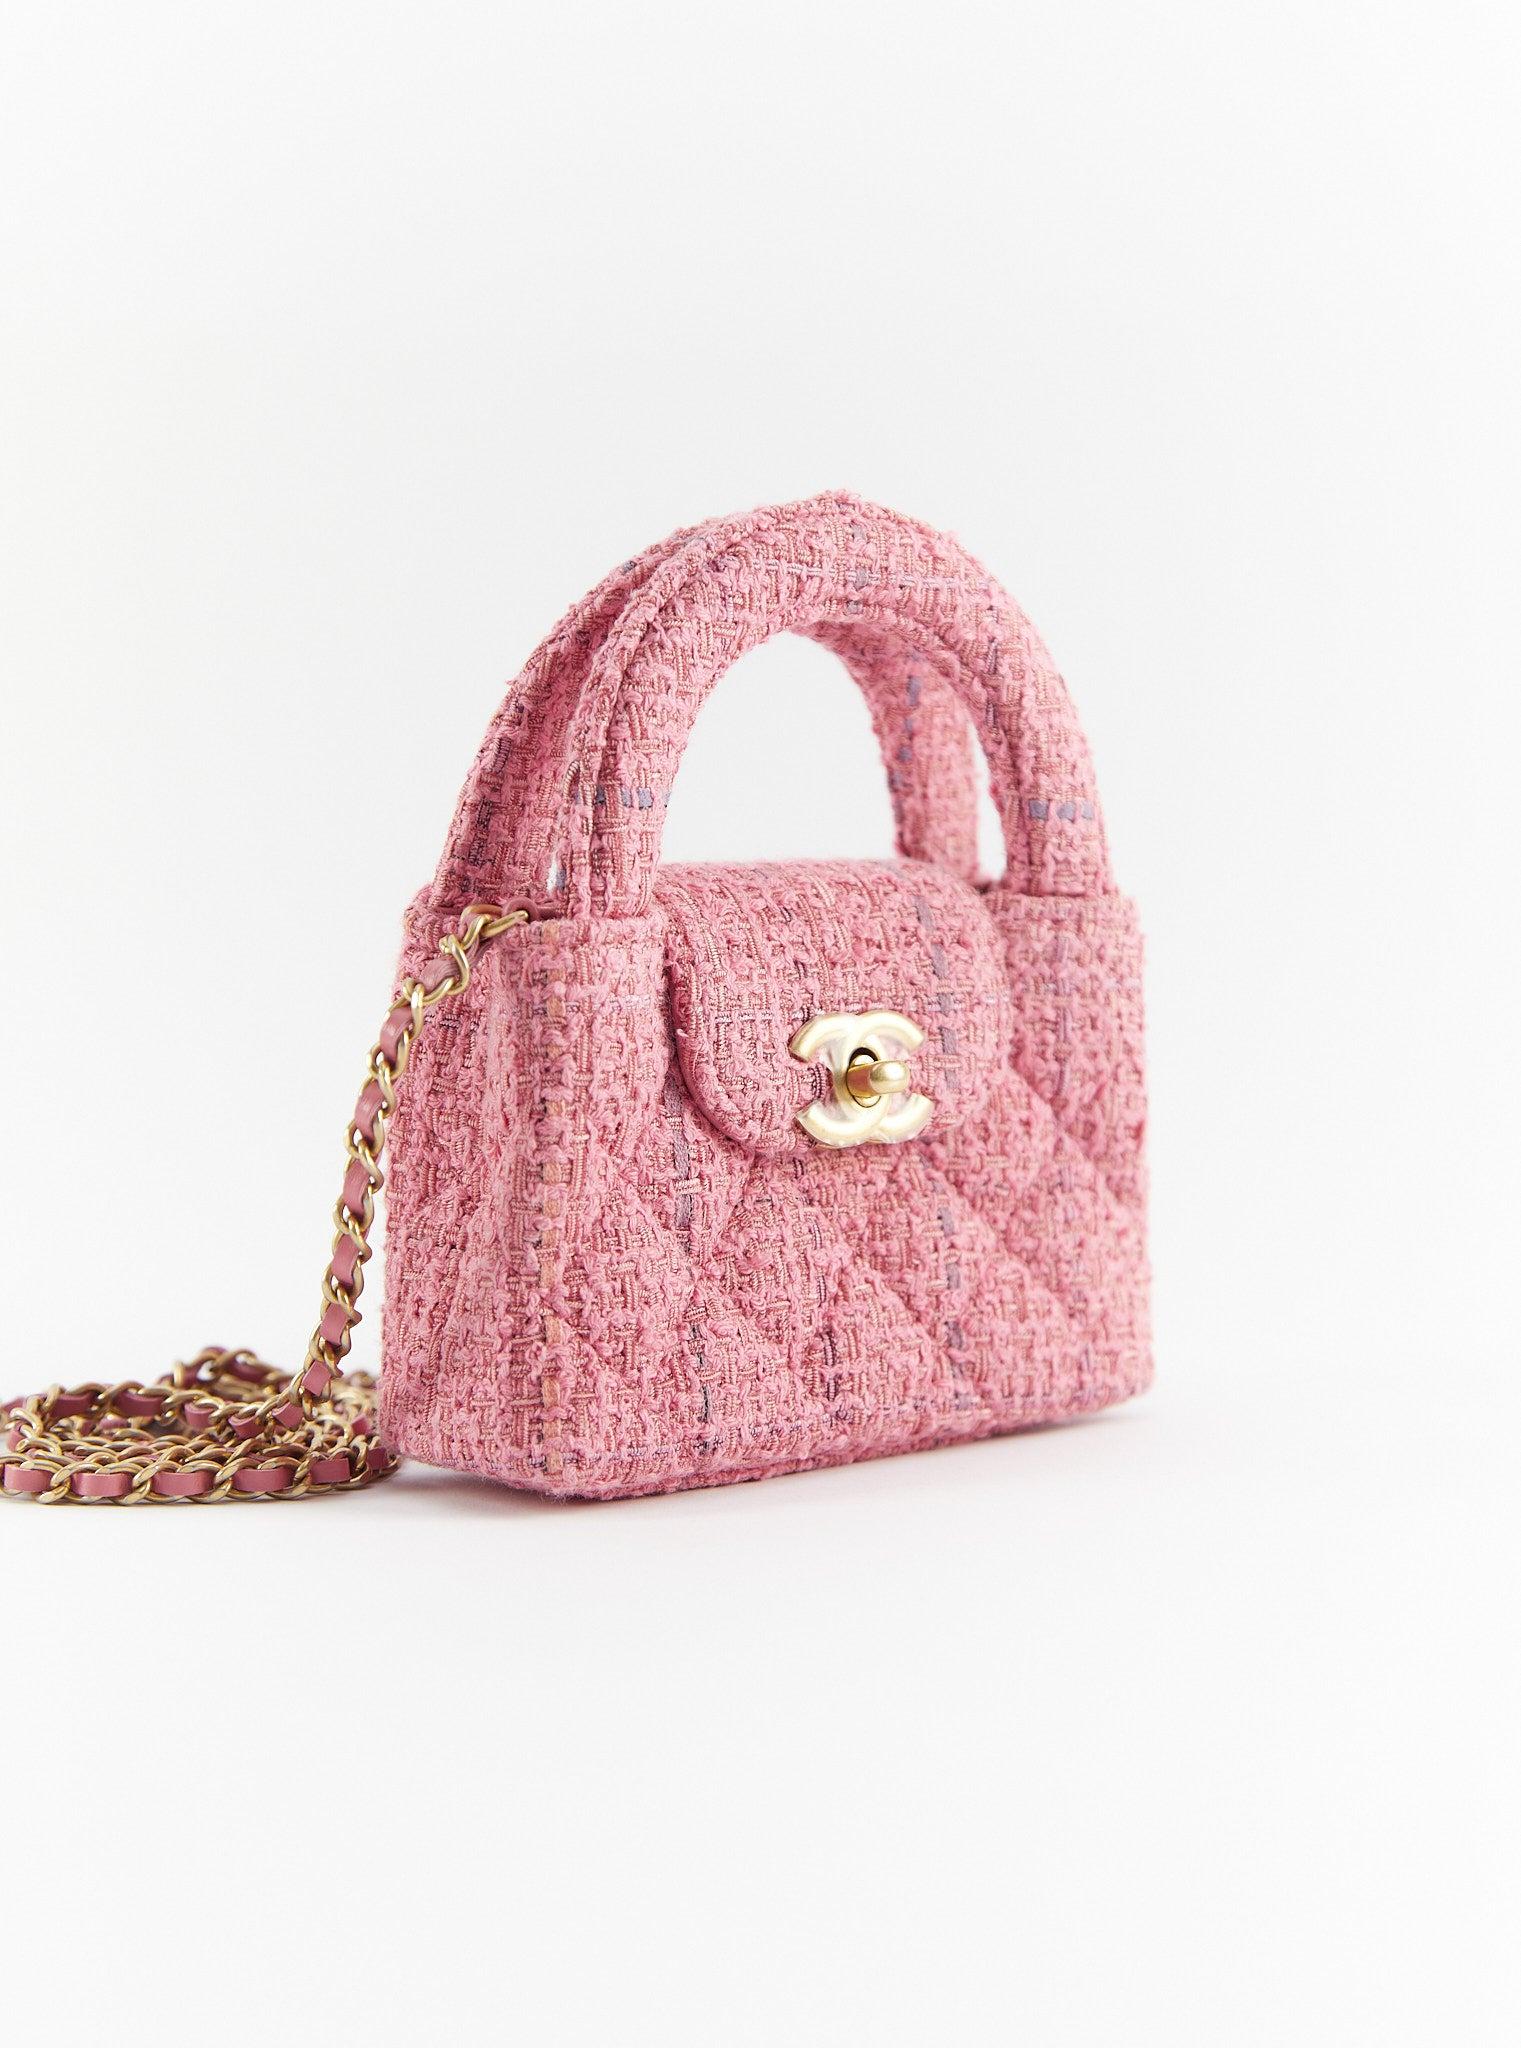 Sac Chanel Nano Kelly en rose

Tweed avec quincaillerie en or

Accompagné de : Boîte Chanel, sac à poussière et jeton d'authenticité

Dimensions : H 12,5 x L 8,3 x P 4cm : H 12,5 x L 8,3 x P 4cm